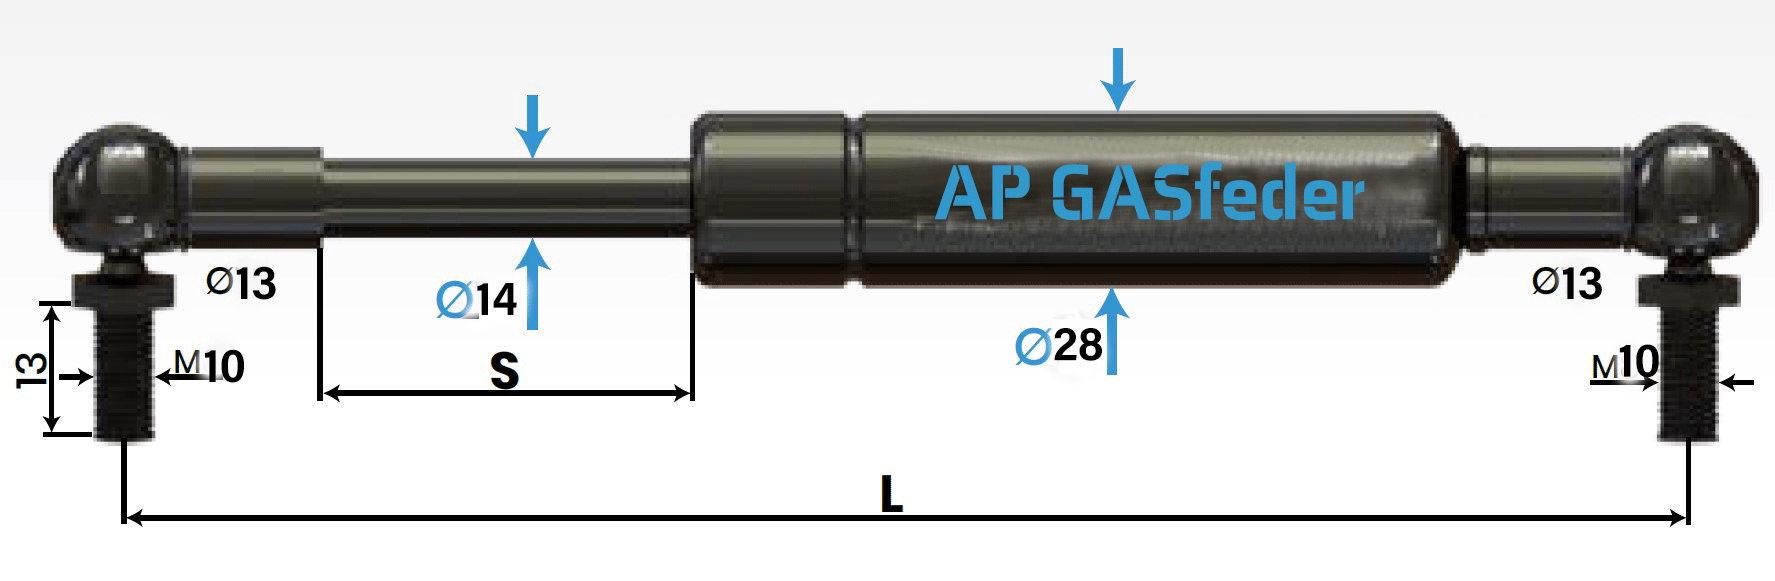 Bild von AP GASfeder 1500N, 14/28, Hub(S): 150 mm, Länge (L): 435 mm,  Alternatvie SRST.2362LI